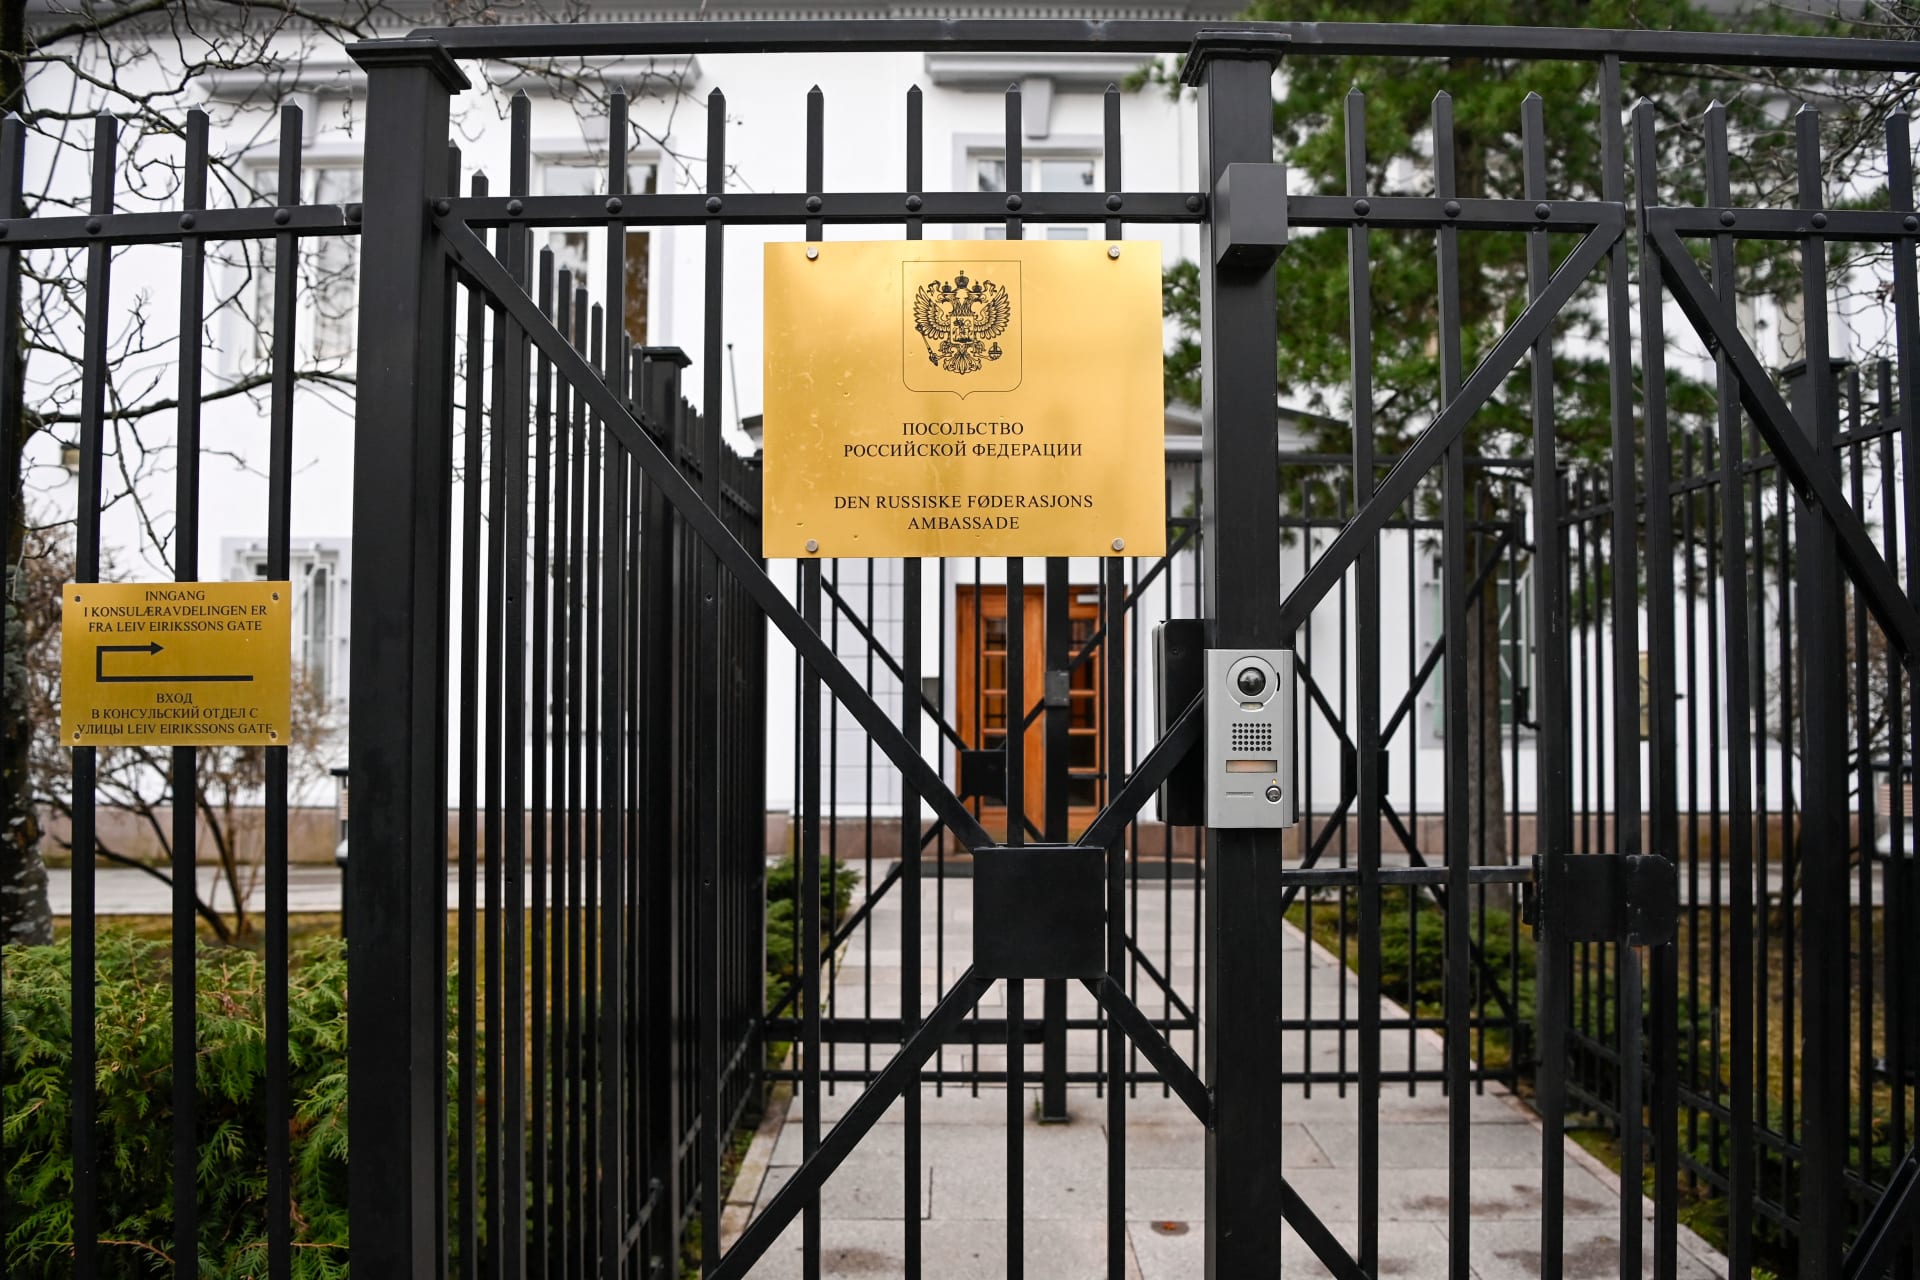 النرويج تعلن طرد موظفين من السفارة الروسية لأنهم "عملاء استخبارات"